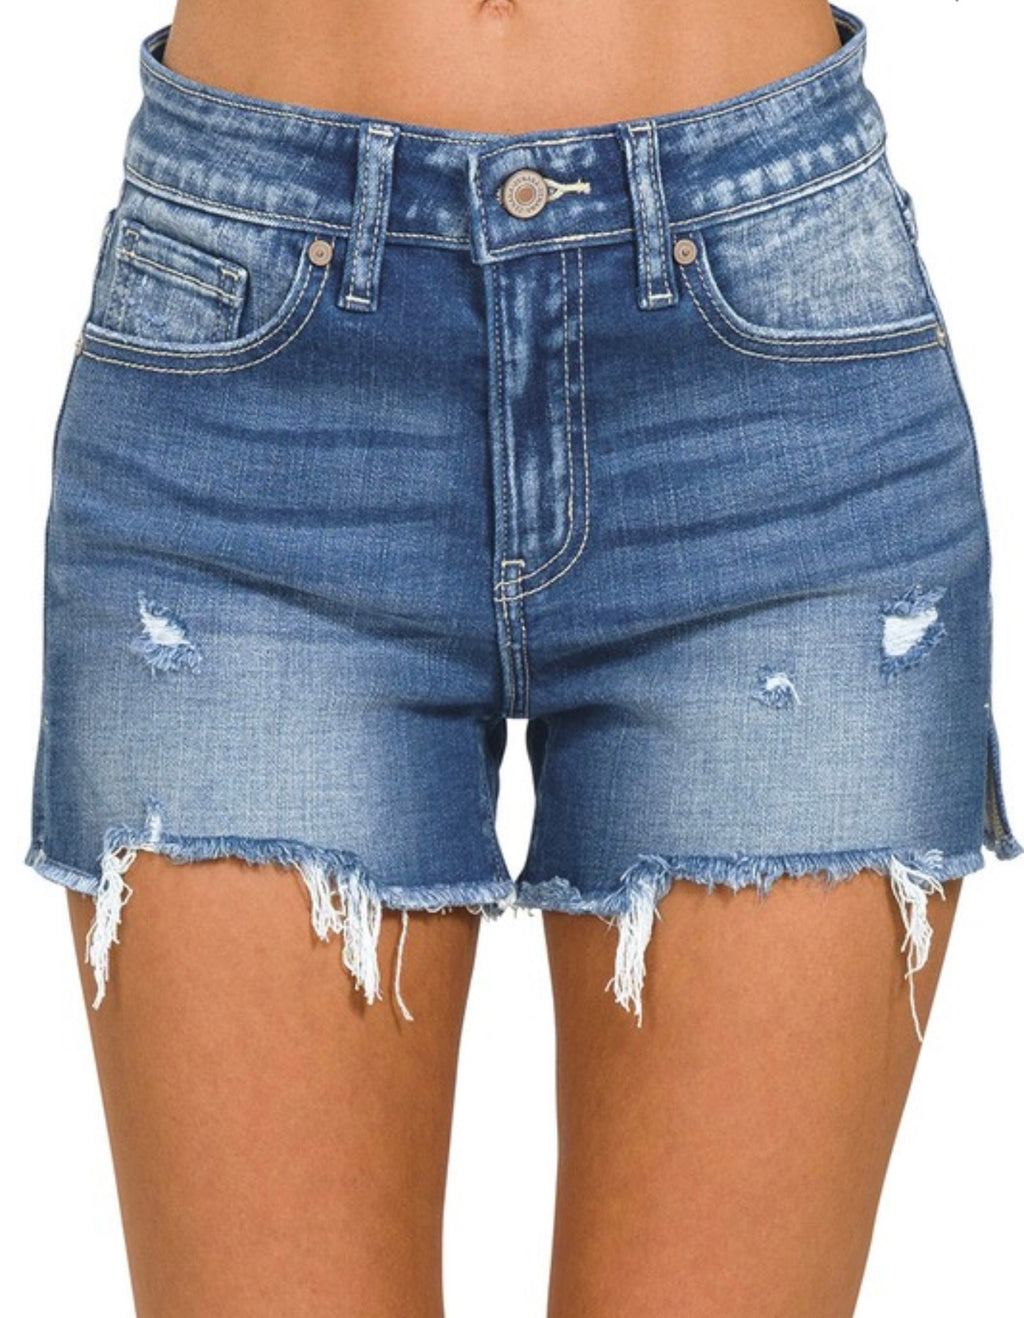 Raw Frayed Cutoff Denim Shorts